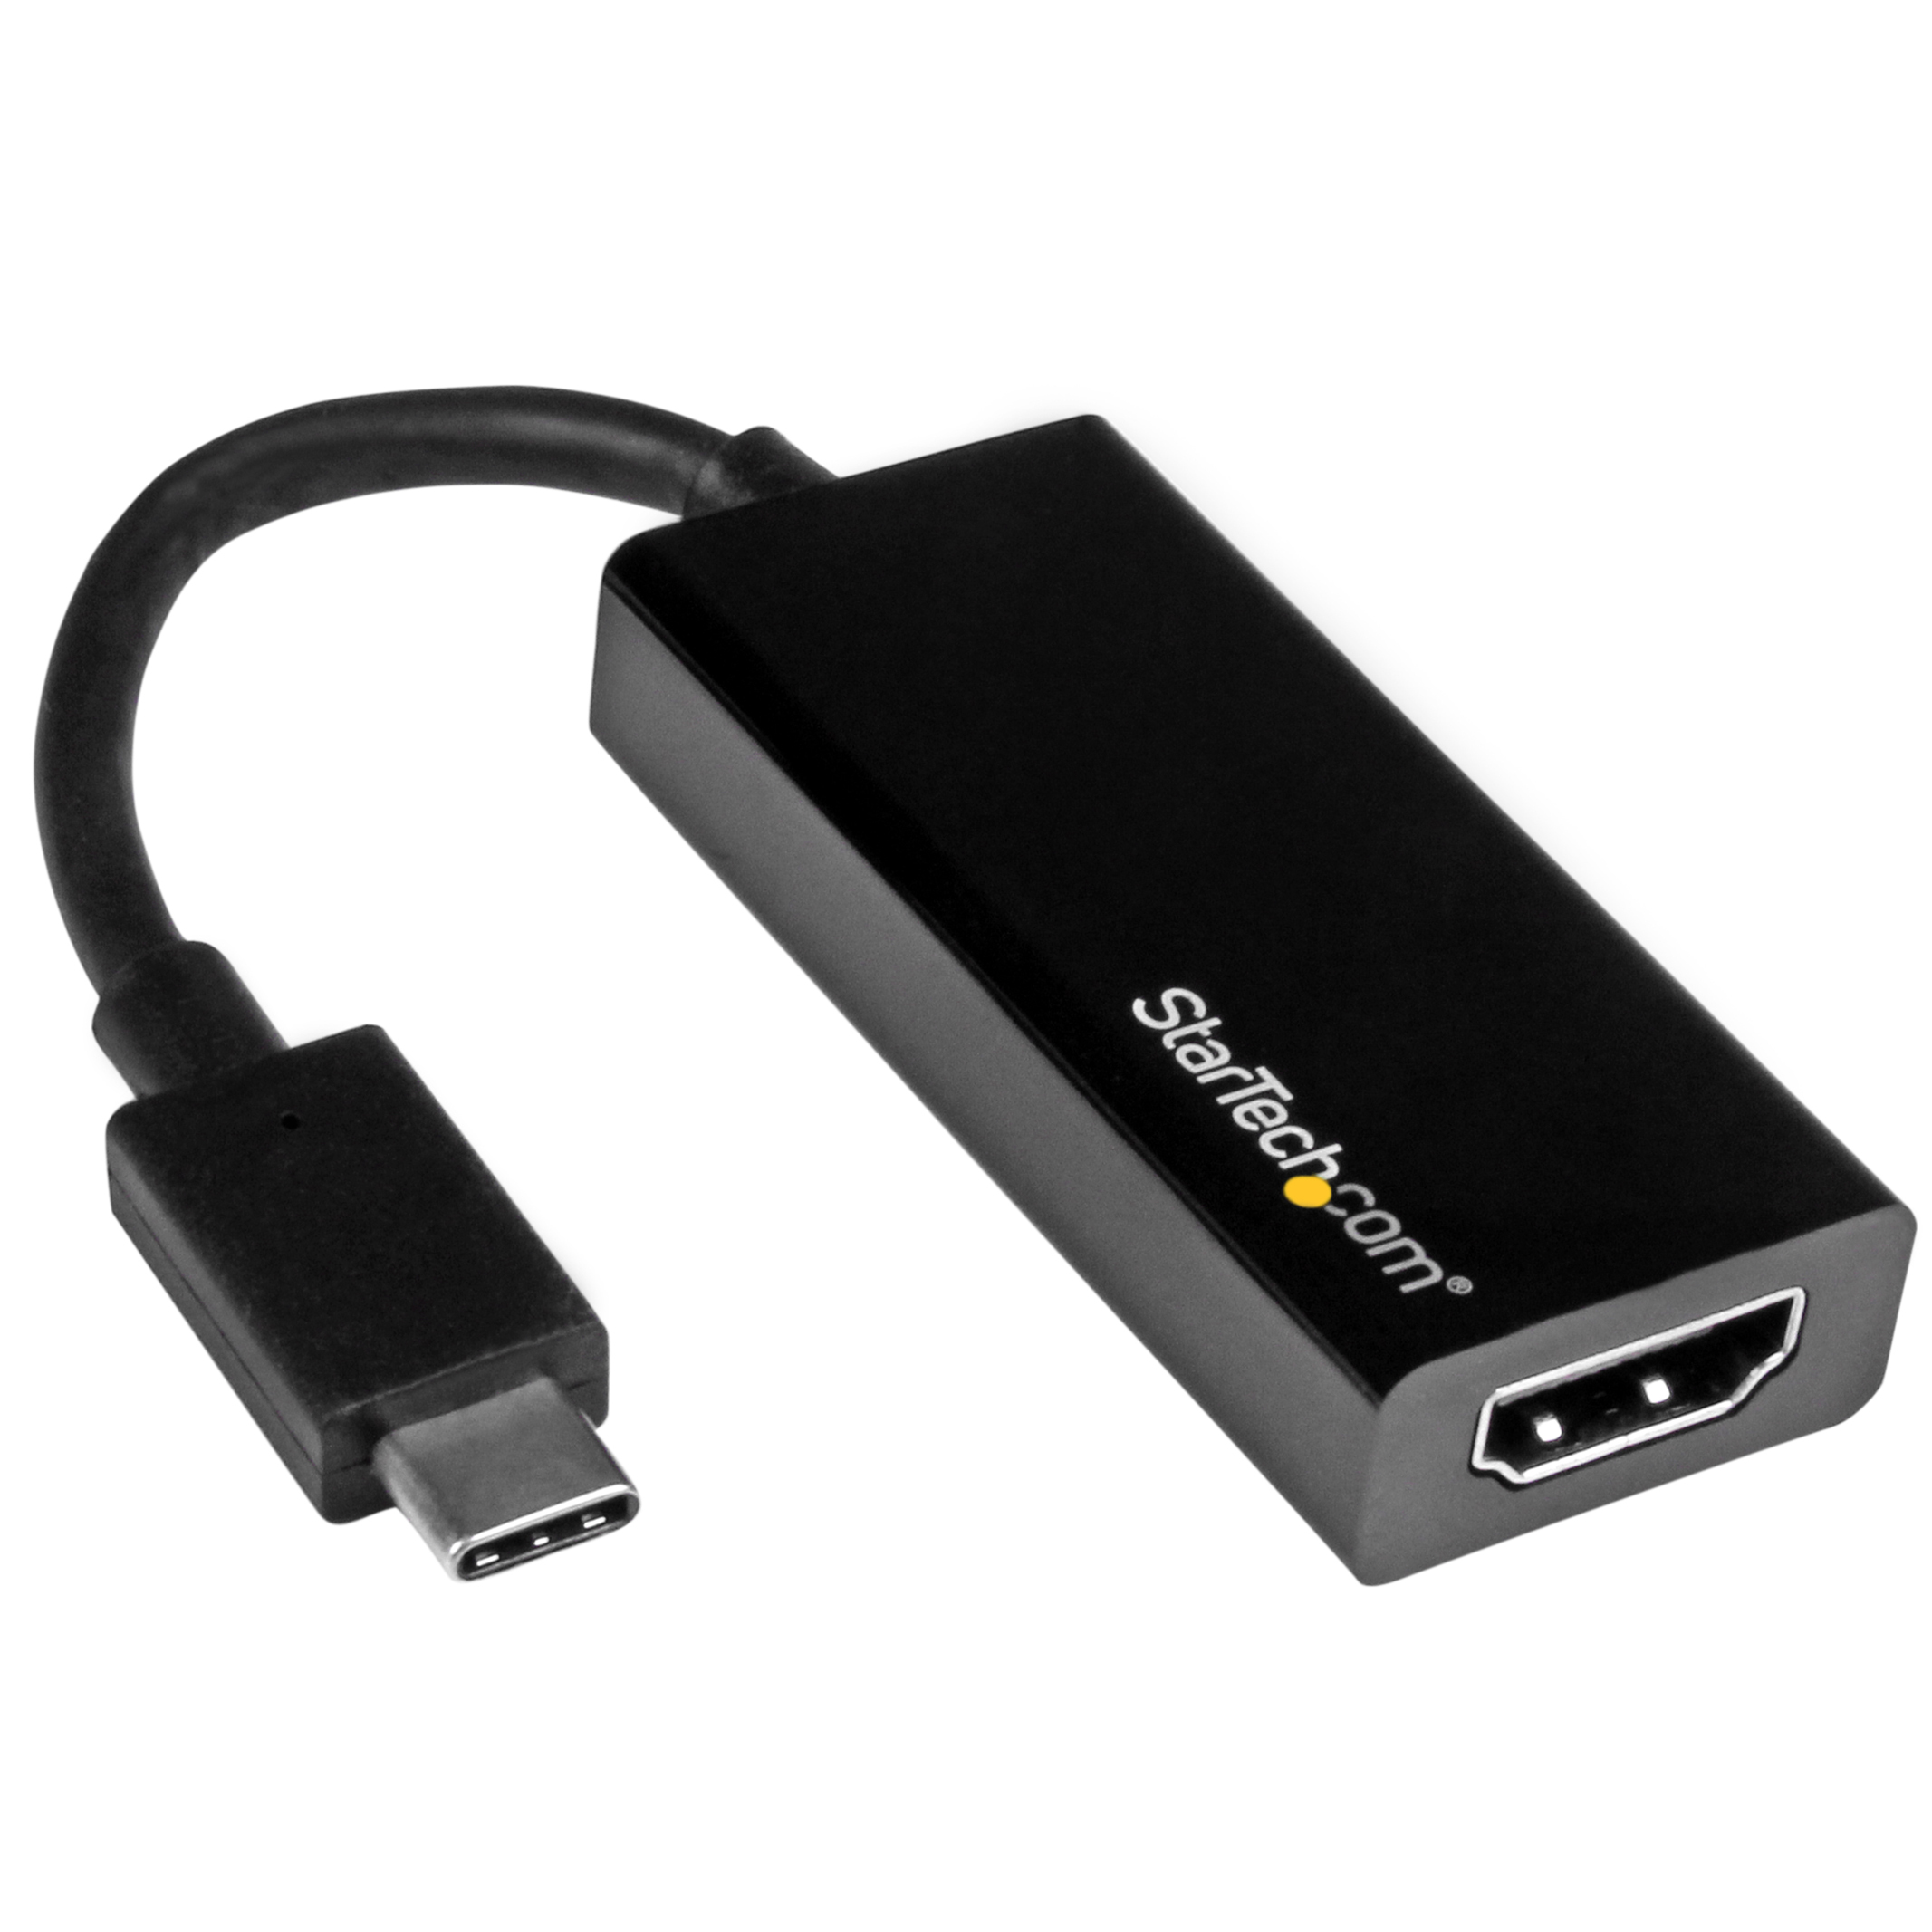 Atrás, atrás, atrás parte tranquilo Entrada StarTech.com USB C to HDMI Adapter - USB 3.1 Type C Converter - 4K 30Hz UHD  - external video adapter - black | Dell Australia